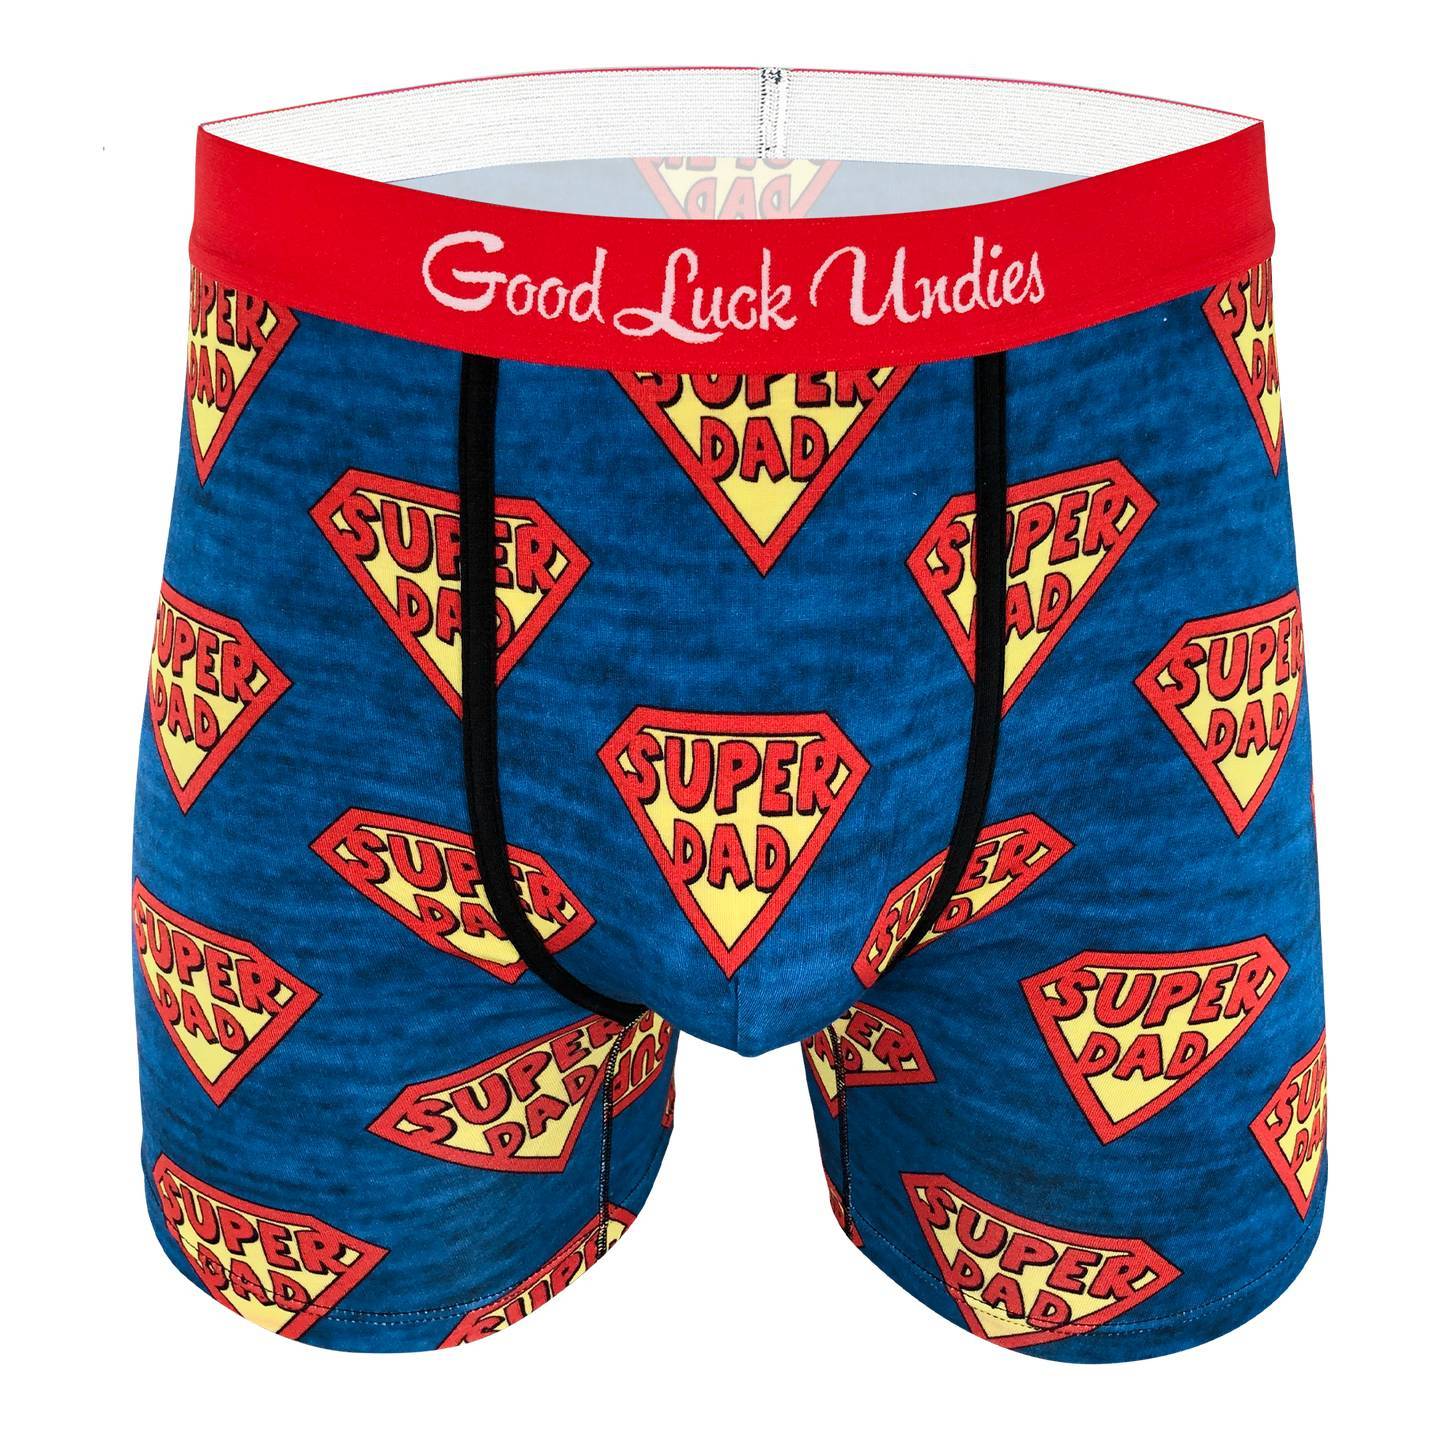 Good Luck Undies Men's Cans of Whoopass Boxer Brief Underwear